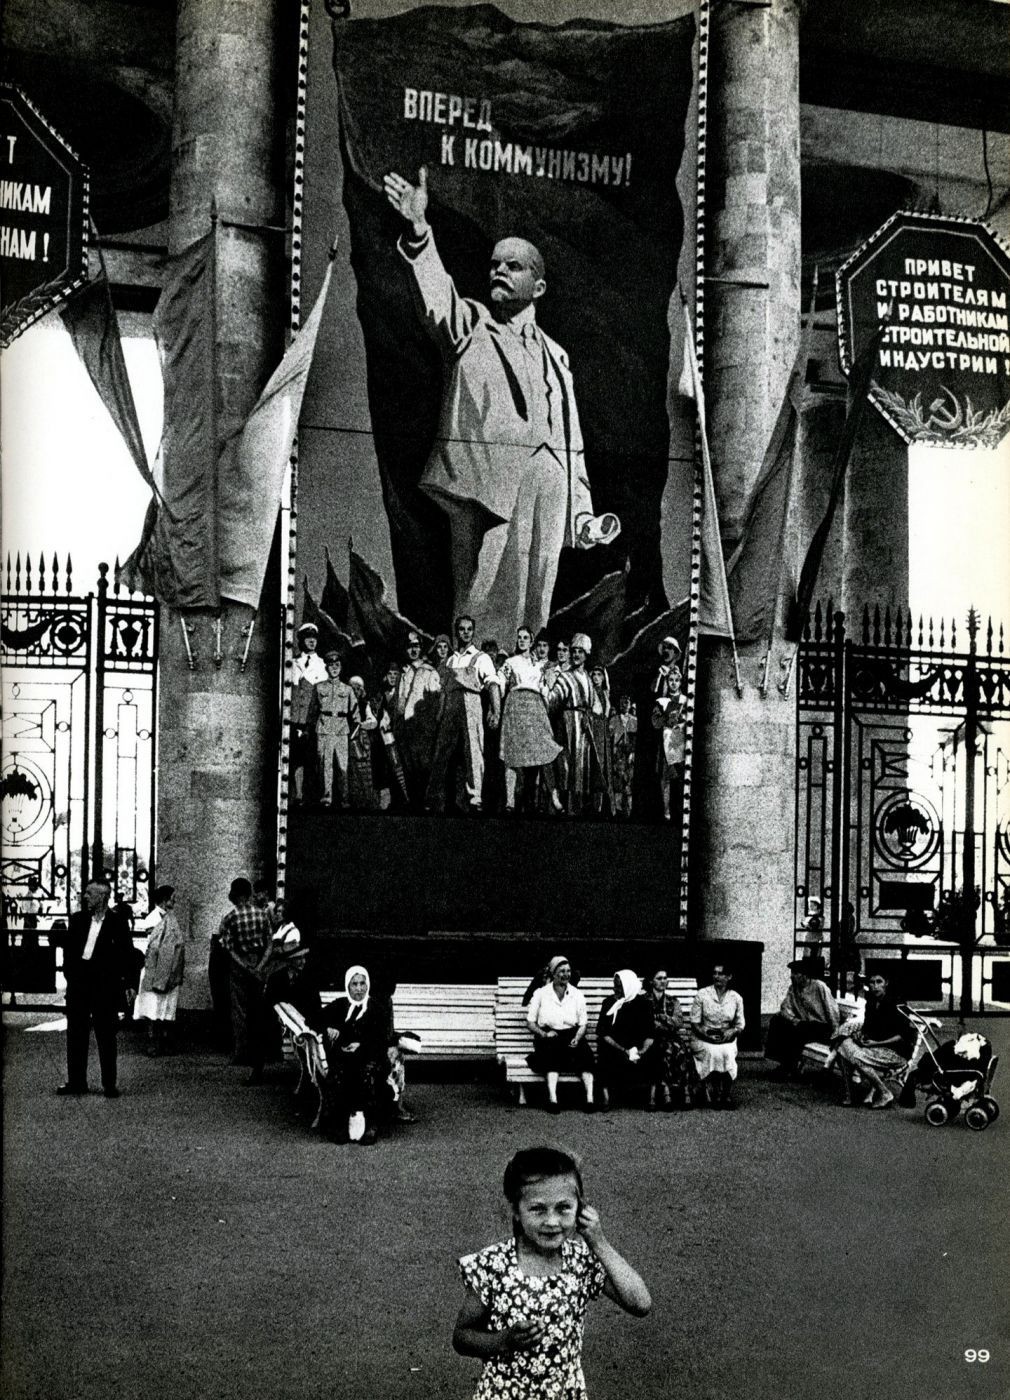 Вперёд к коммунизму. Москва, 1959 год. Фотограф Уильям Кляйн